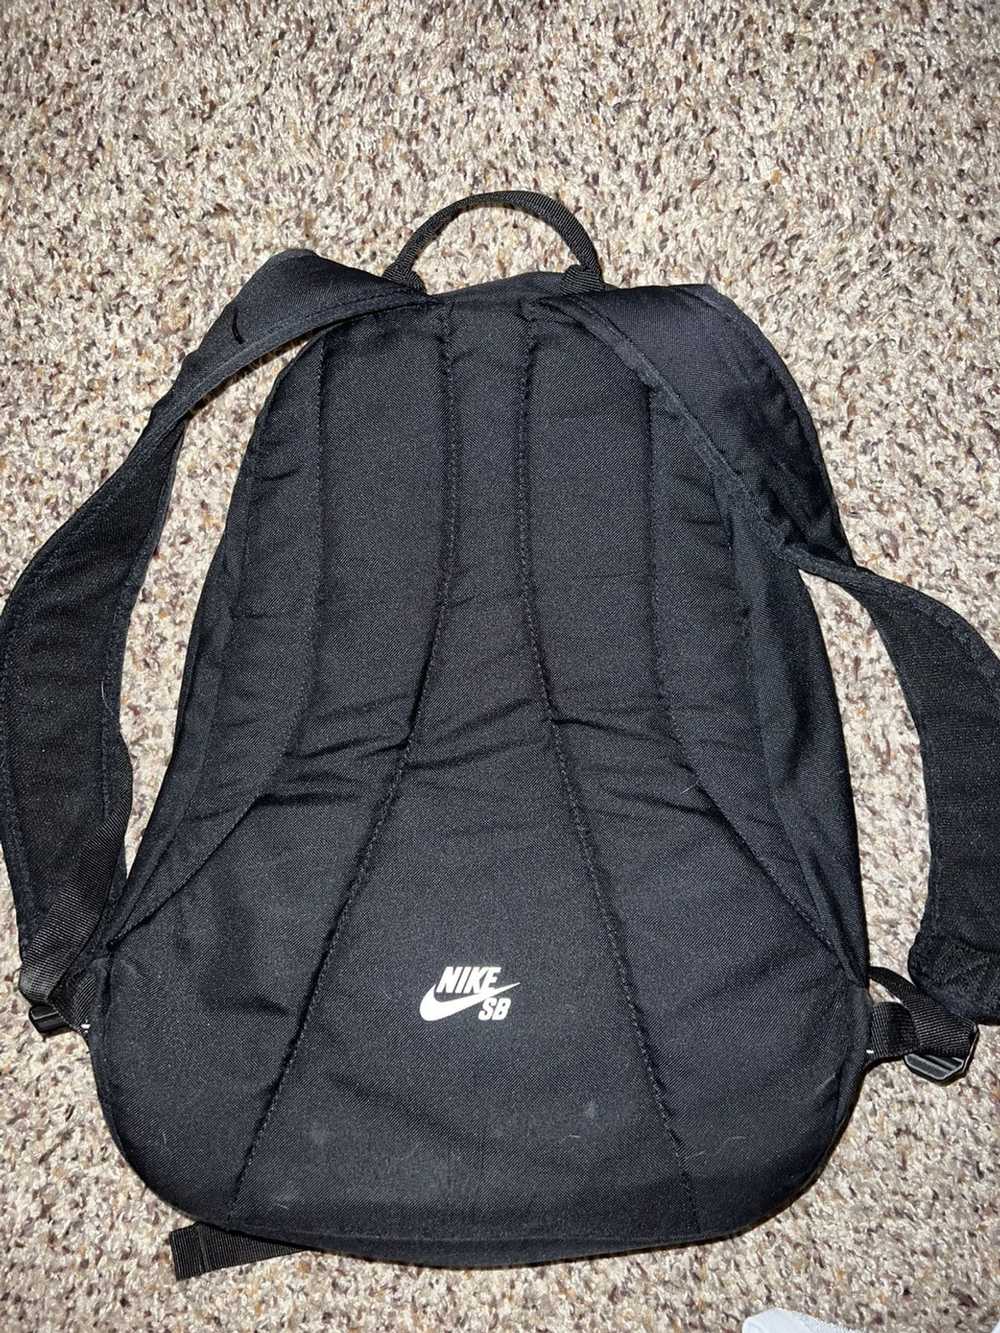 Nike Nike SB backpack - image 3